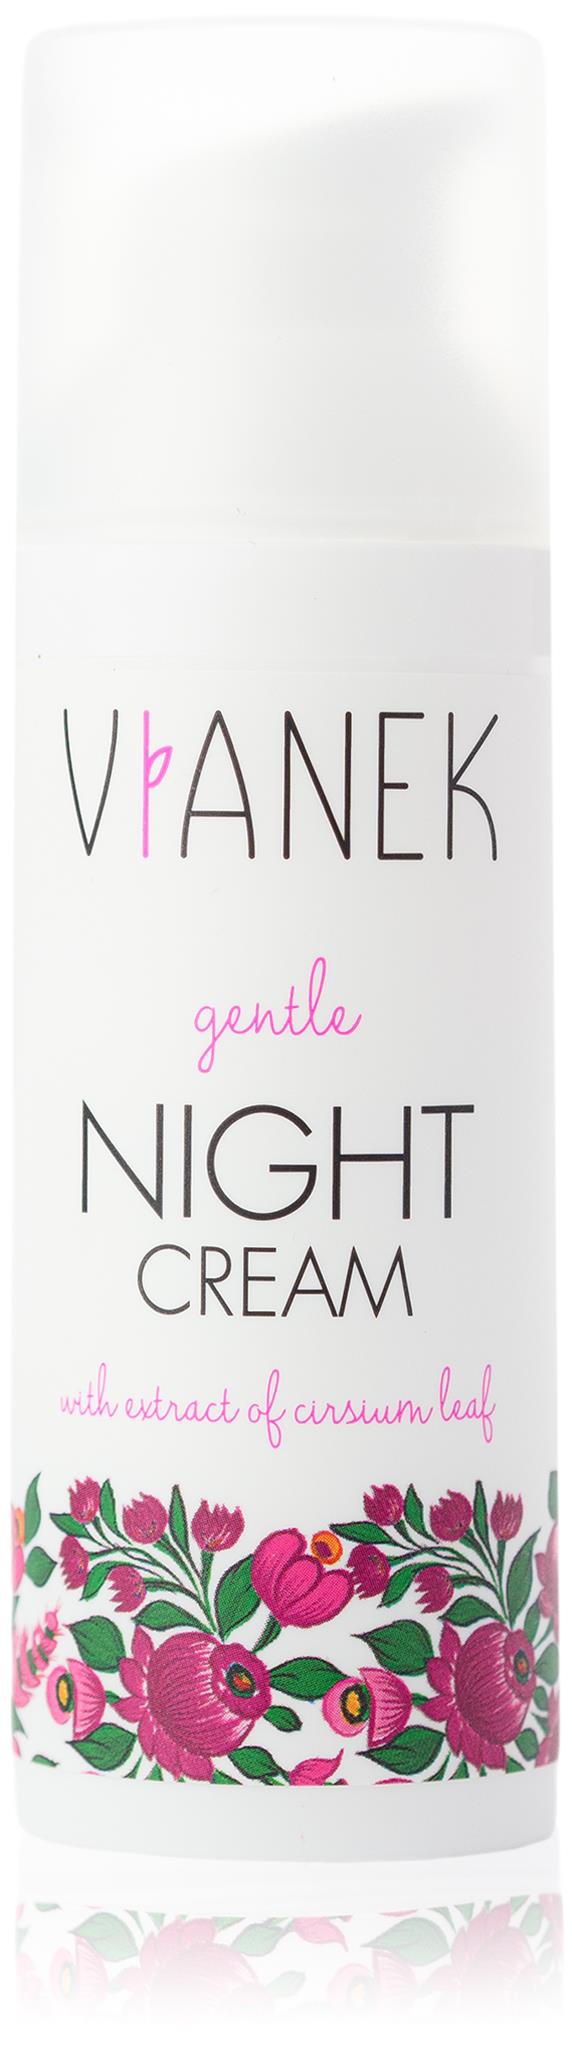 Vianek Gentle Night Cream